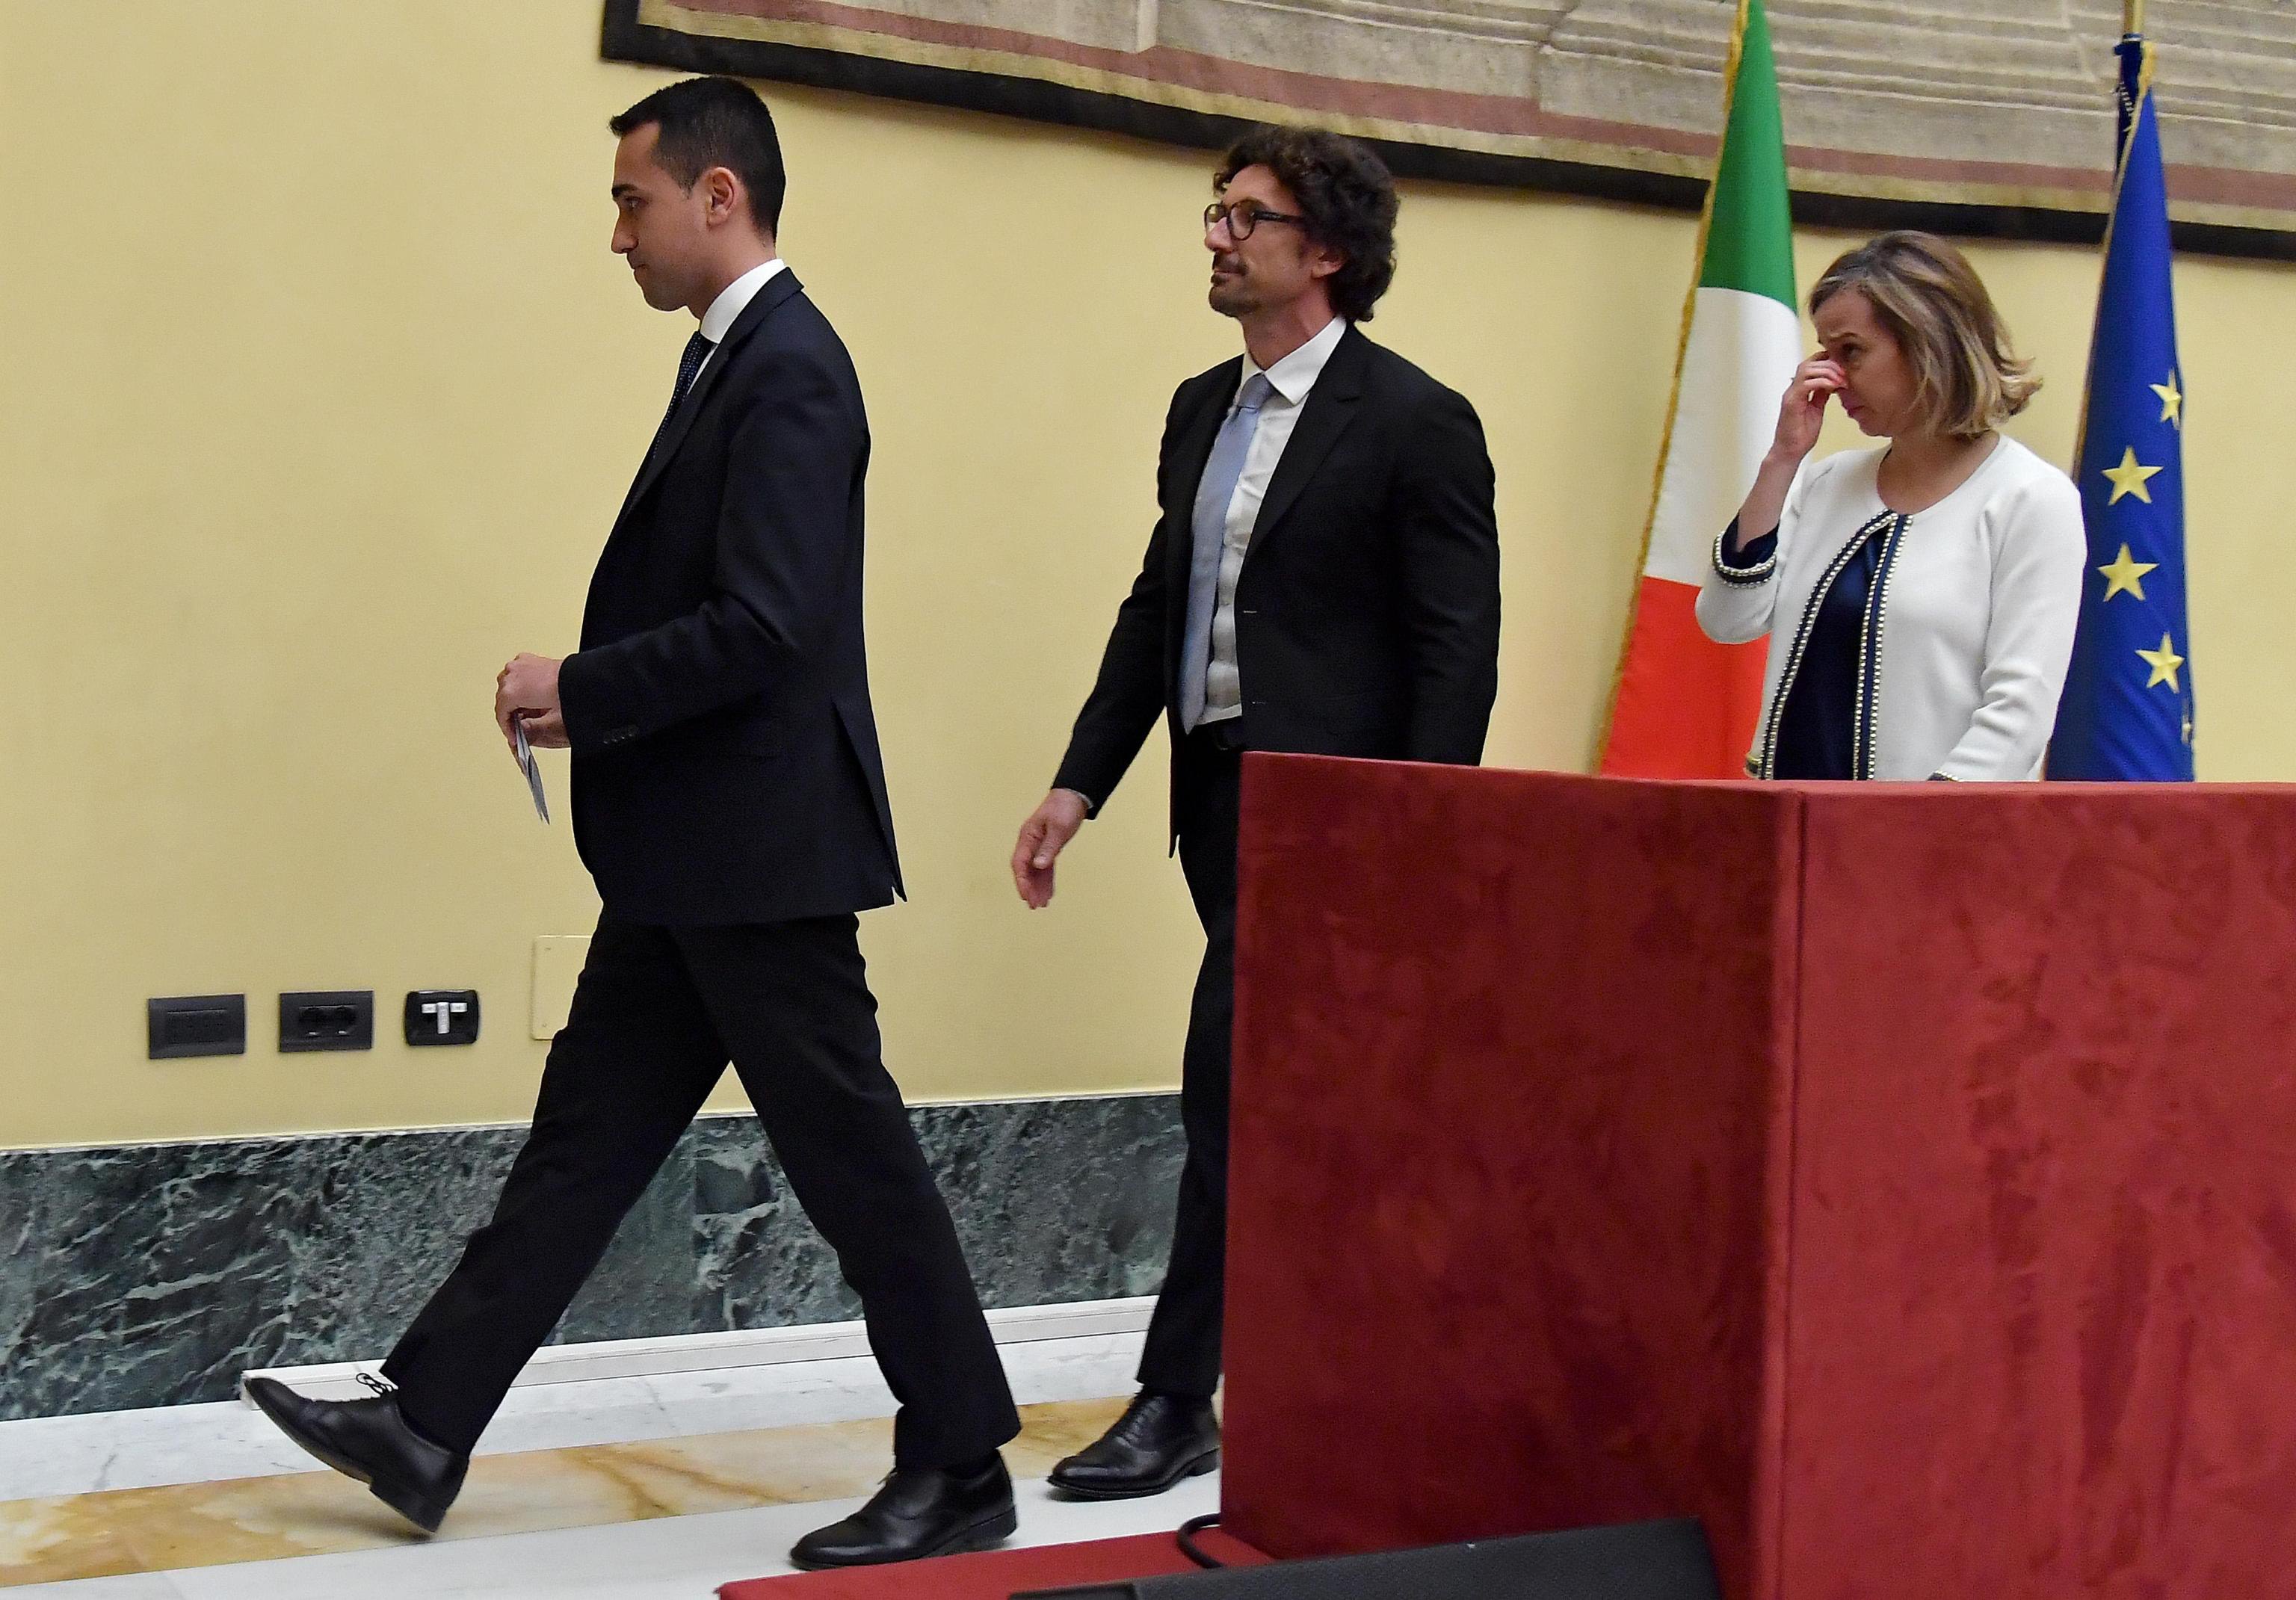 Πέντε Αστέρια – Ιταλία: Προτείνουν σχηματισμό κυβέρνησης με την κεντροαριστερά